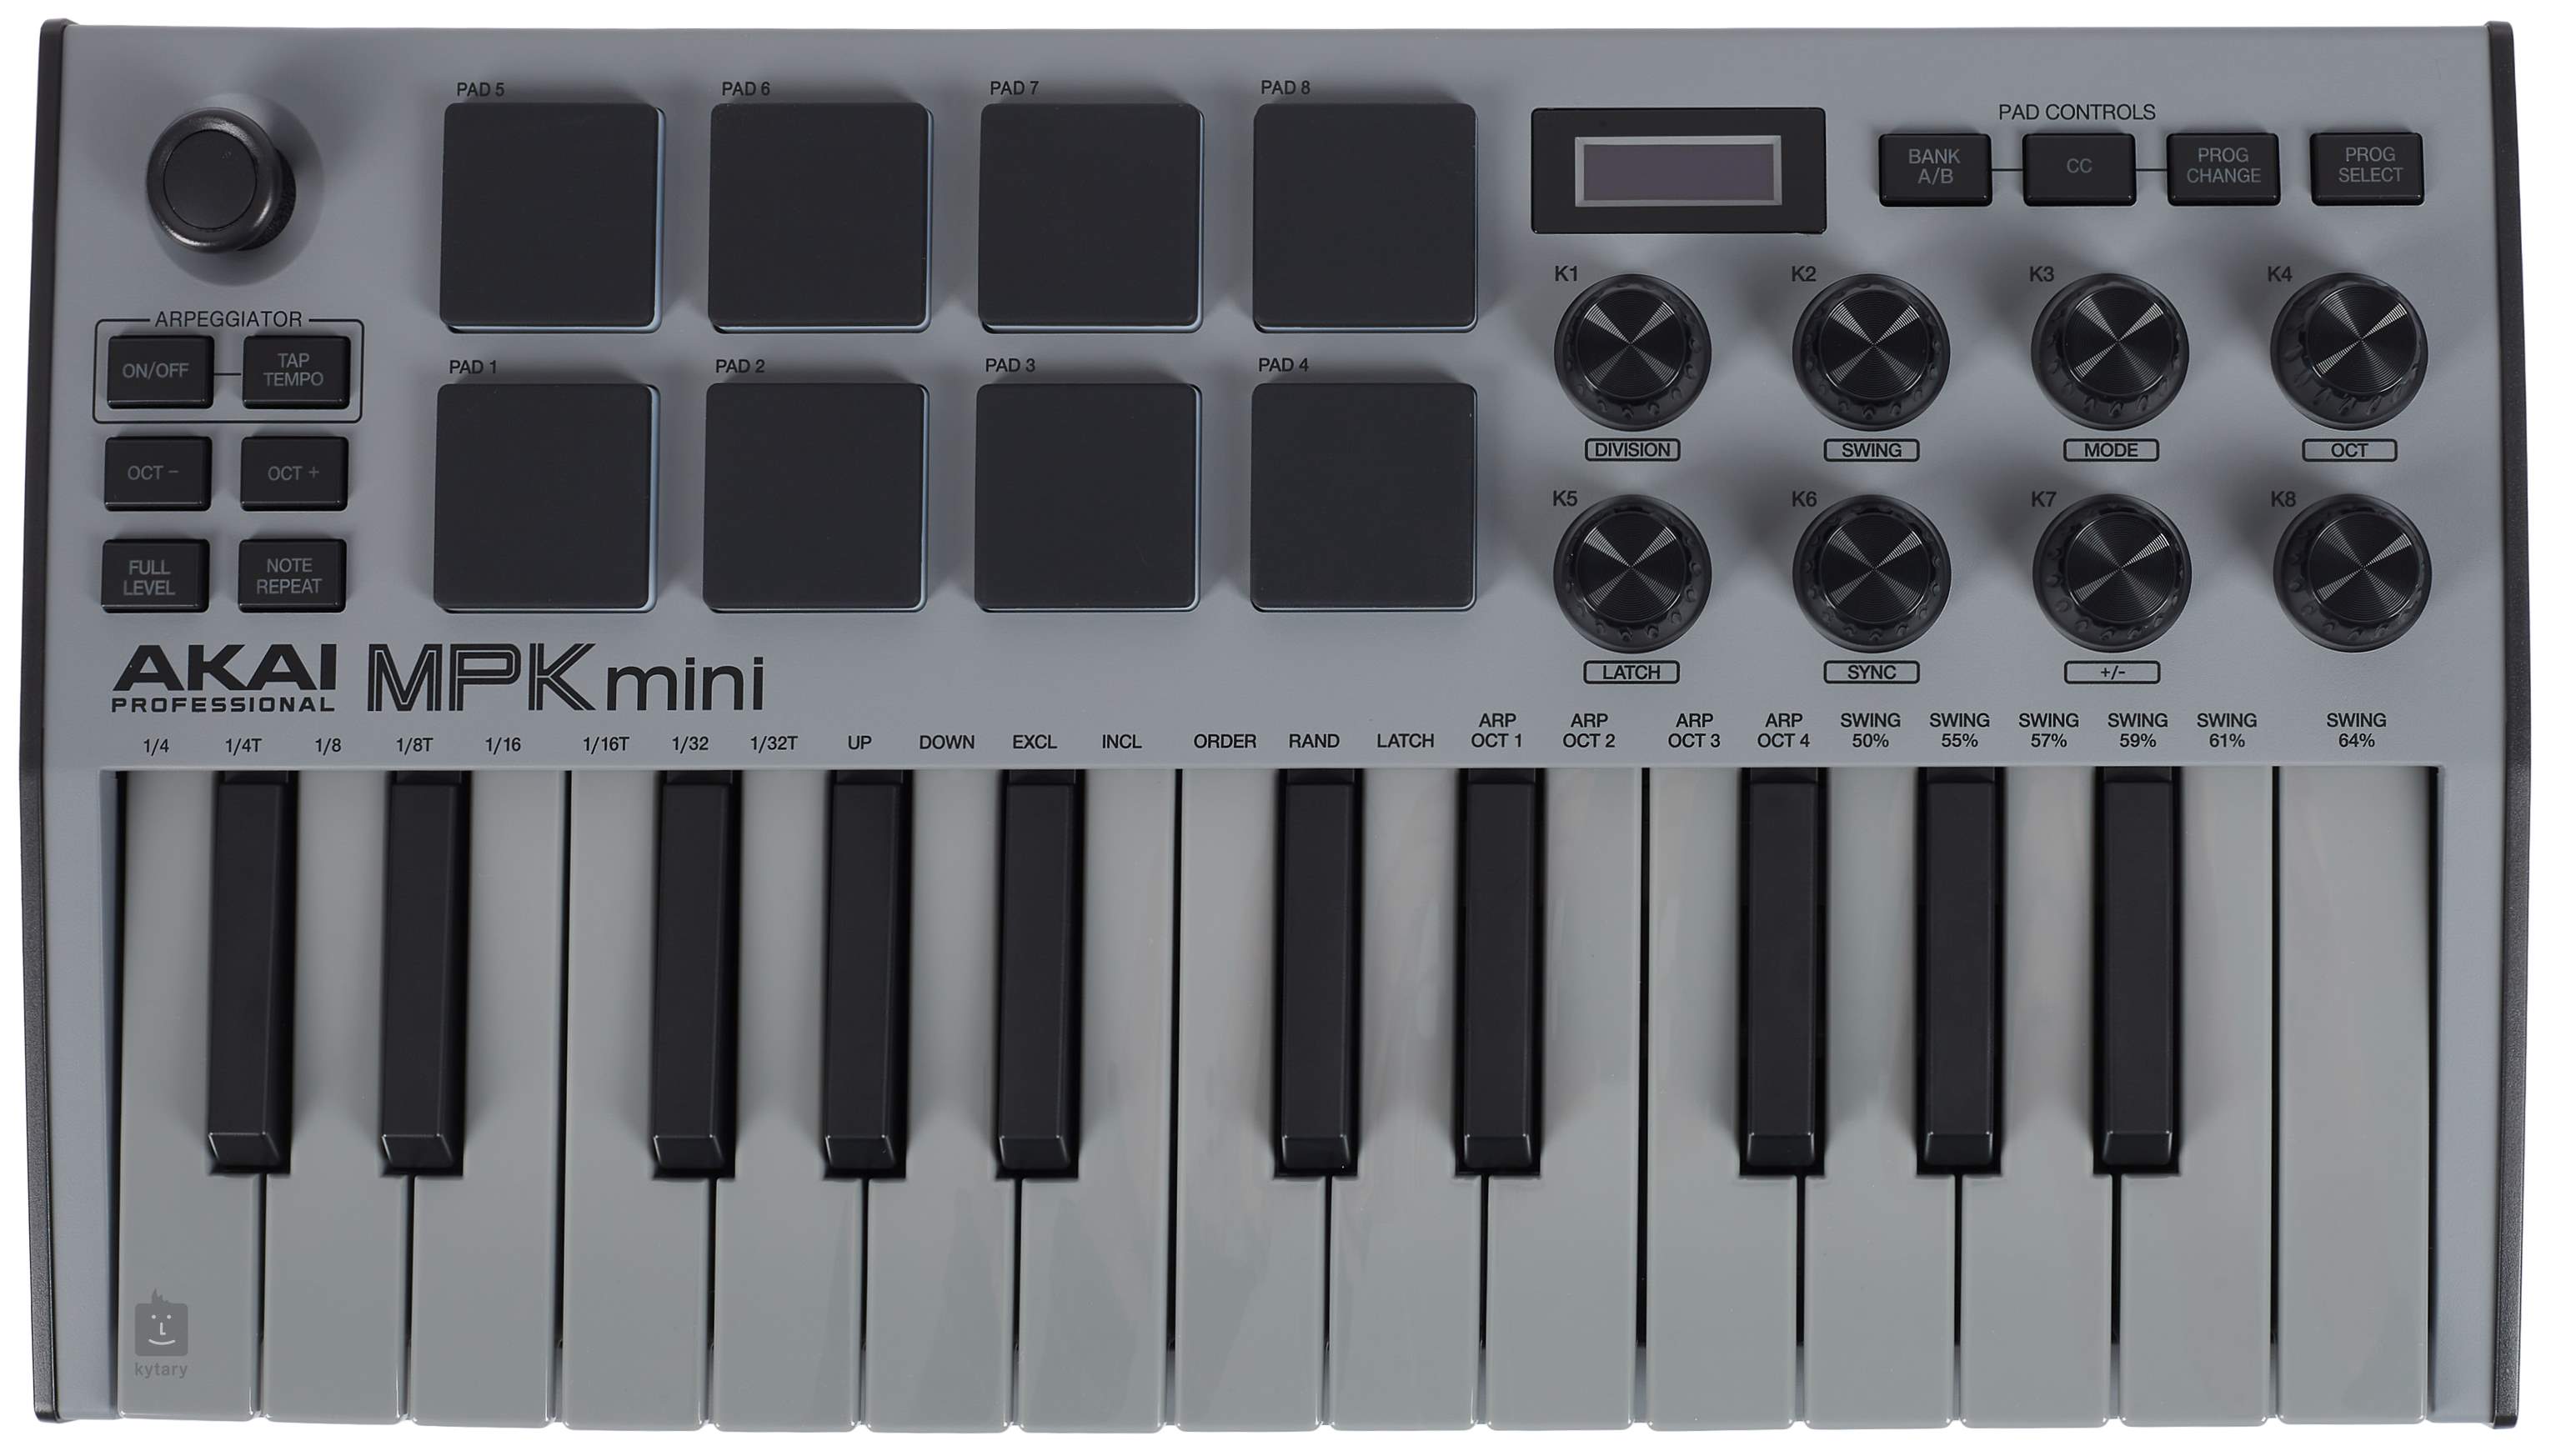 AKAI MPK mini MK3 Grey USB/MIDI keyboard